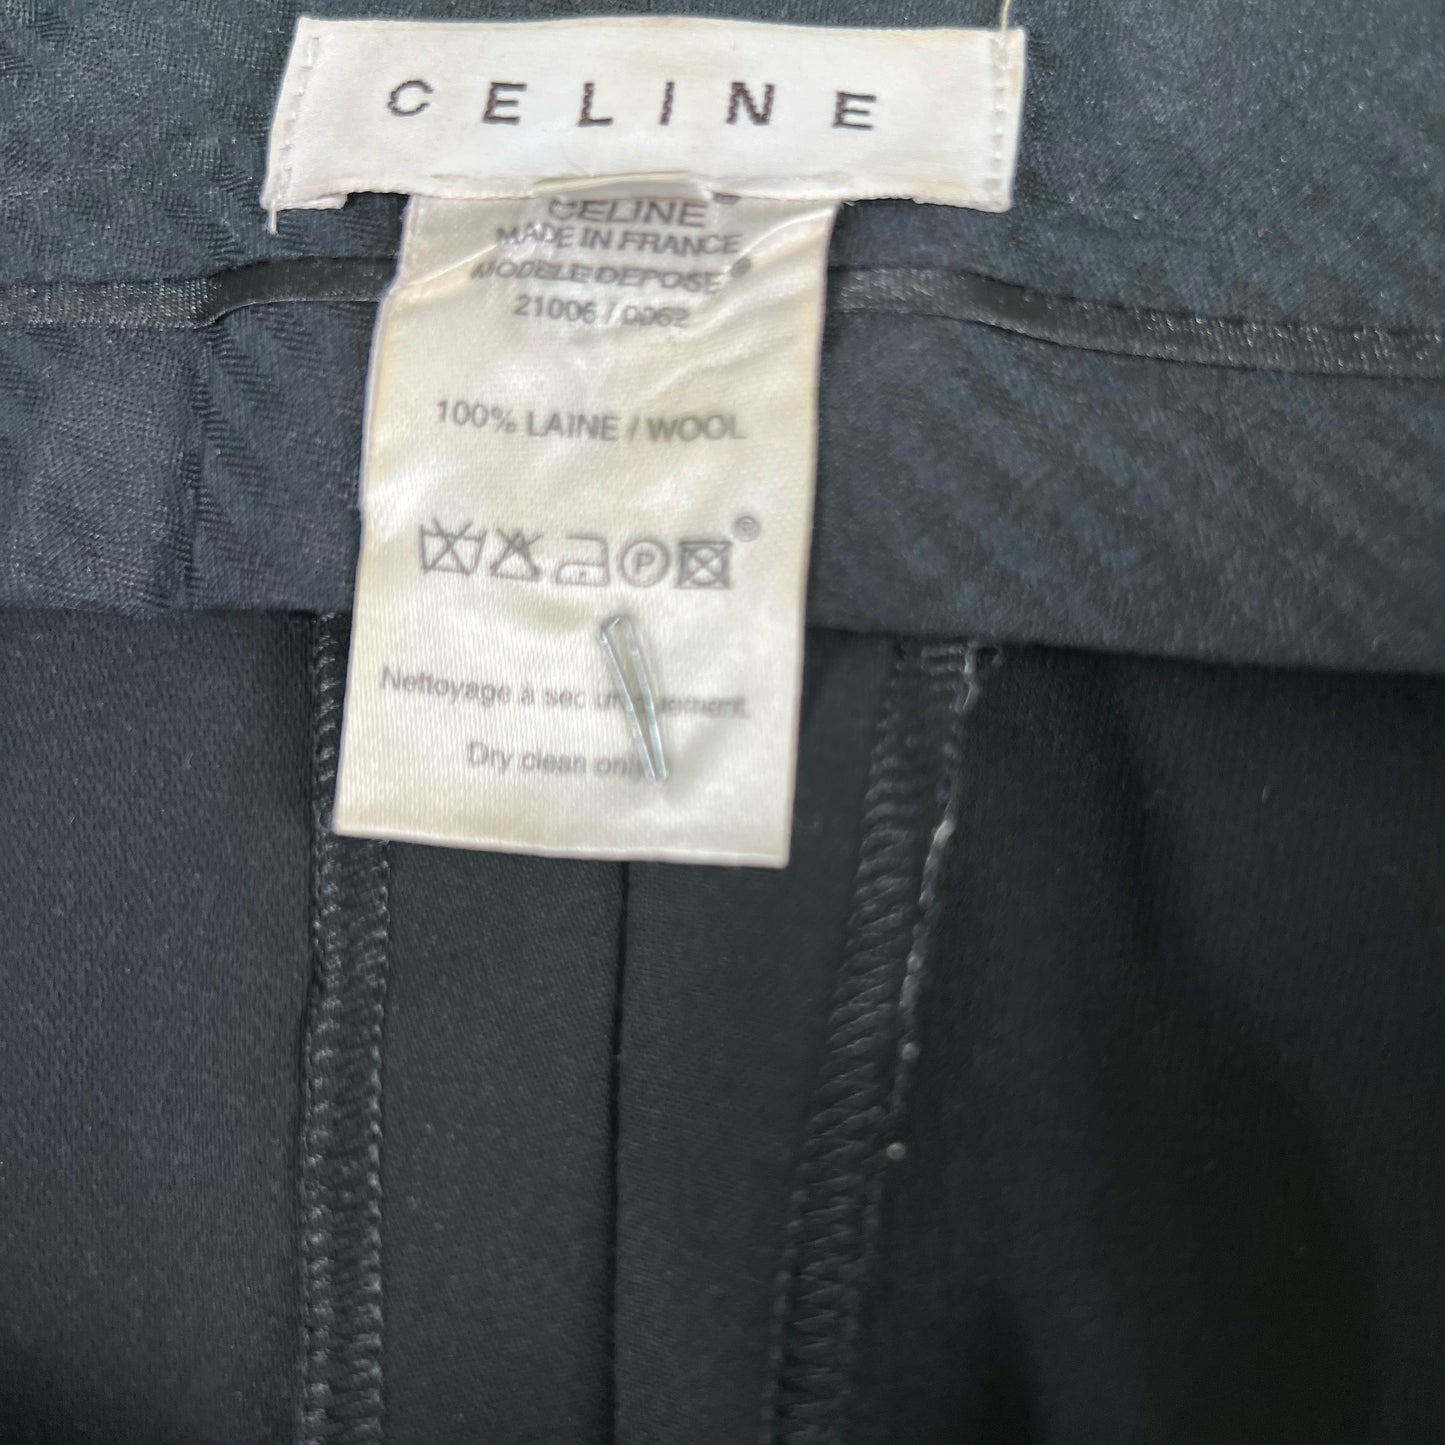 Celine S/S 02 Wool Trousers- 31x31.5